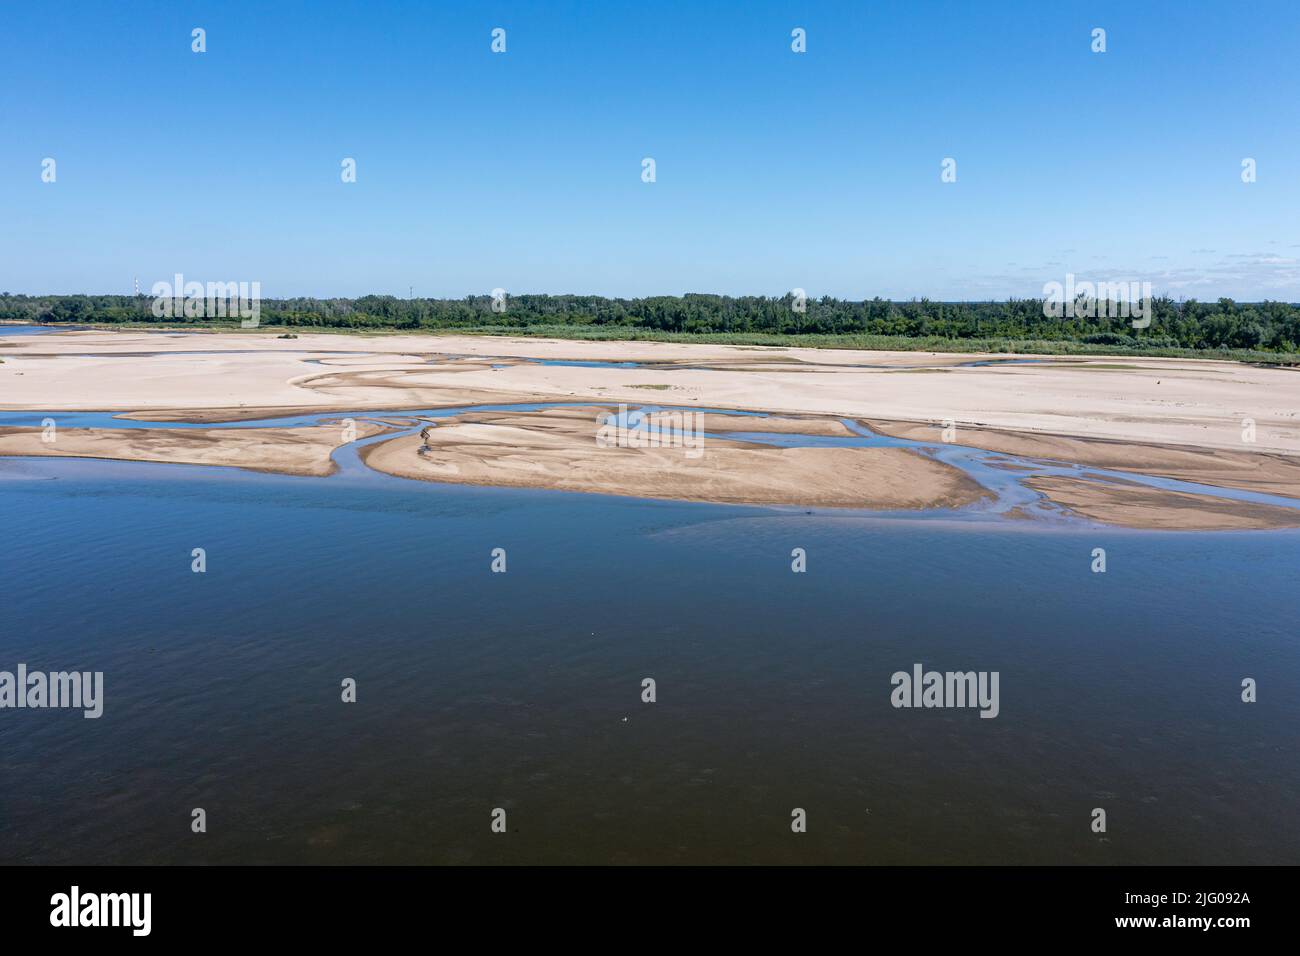 Bajo nivel de agua en el río Vístula, efecto de la sequía visto desde la perspectiva del ojo del pájaro Foto de stock